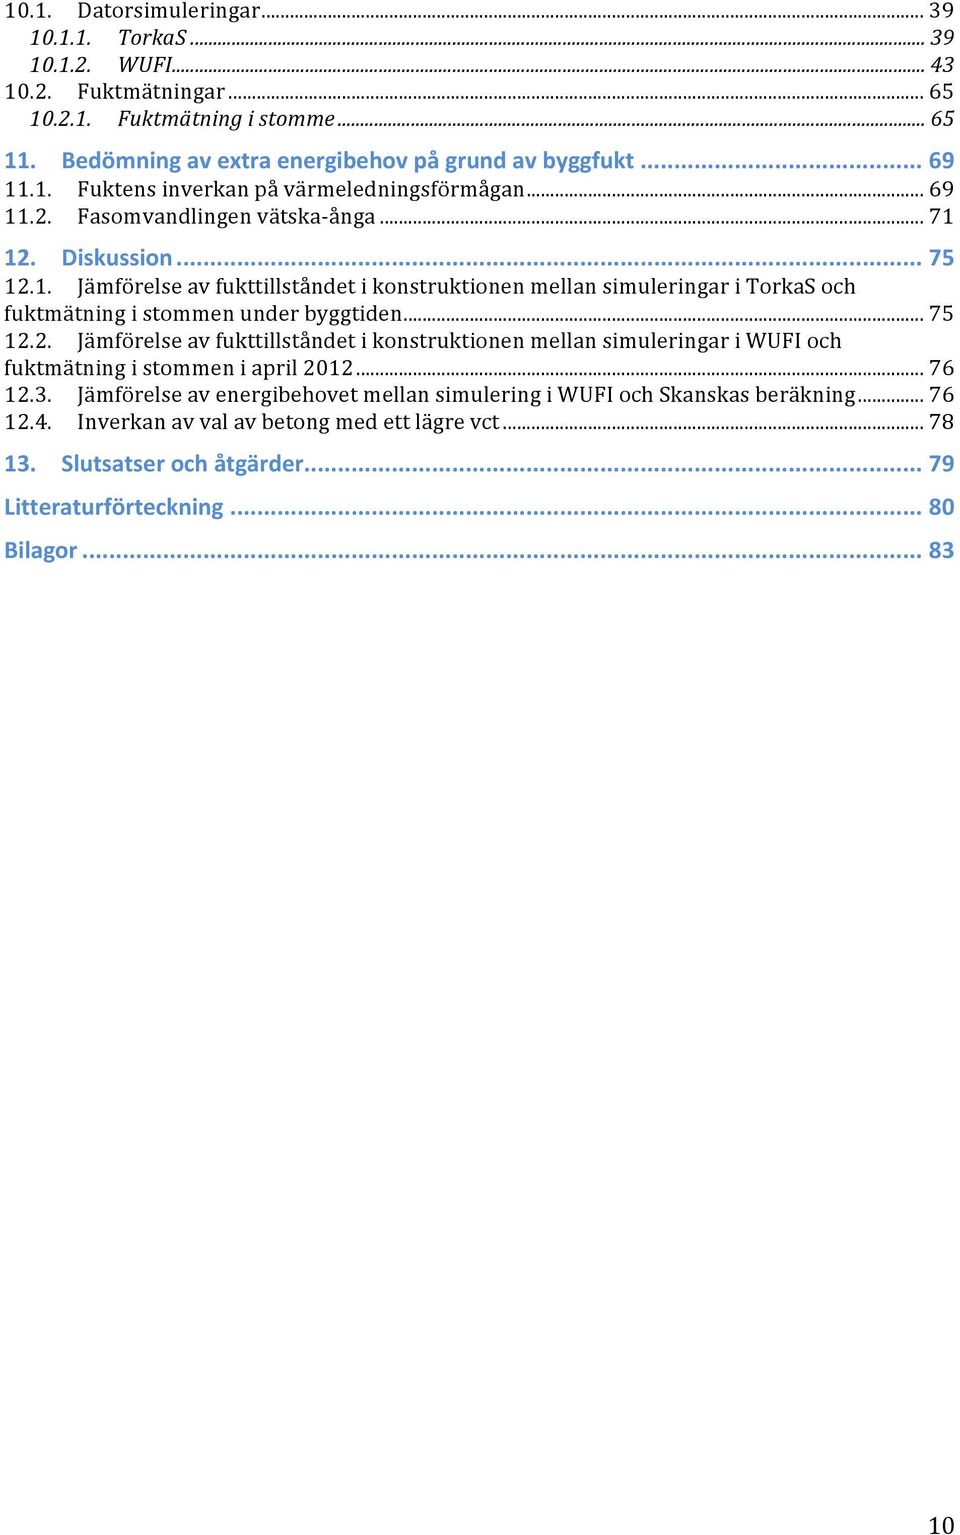 .. 75 12.2. Jämförelse av fukttillståndet i konstruktionen mellan simuleringar i WUFI och fuktmätning i stommen i april 2012... 76 12.3.